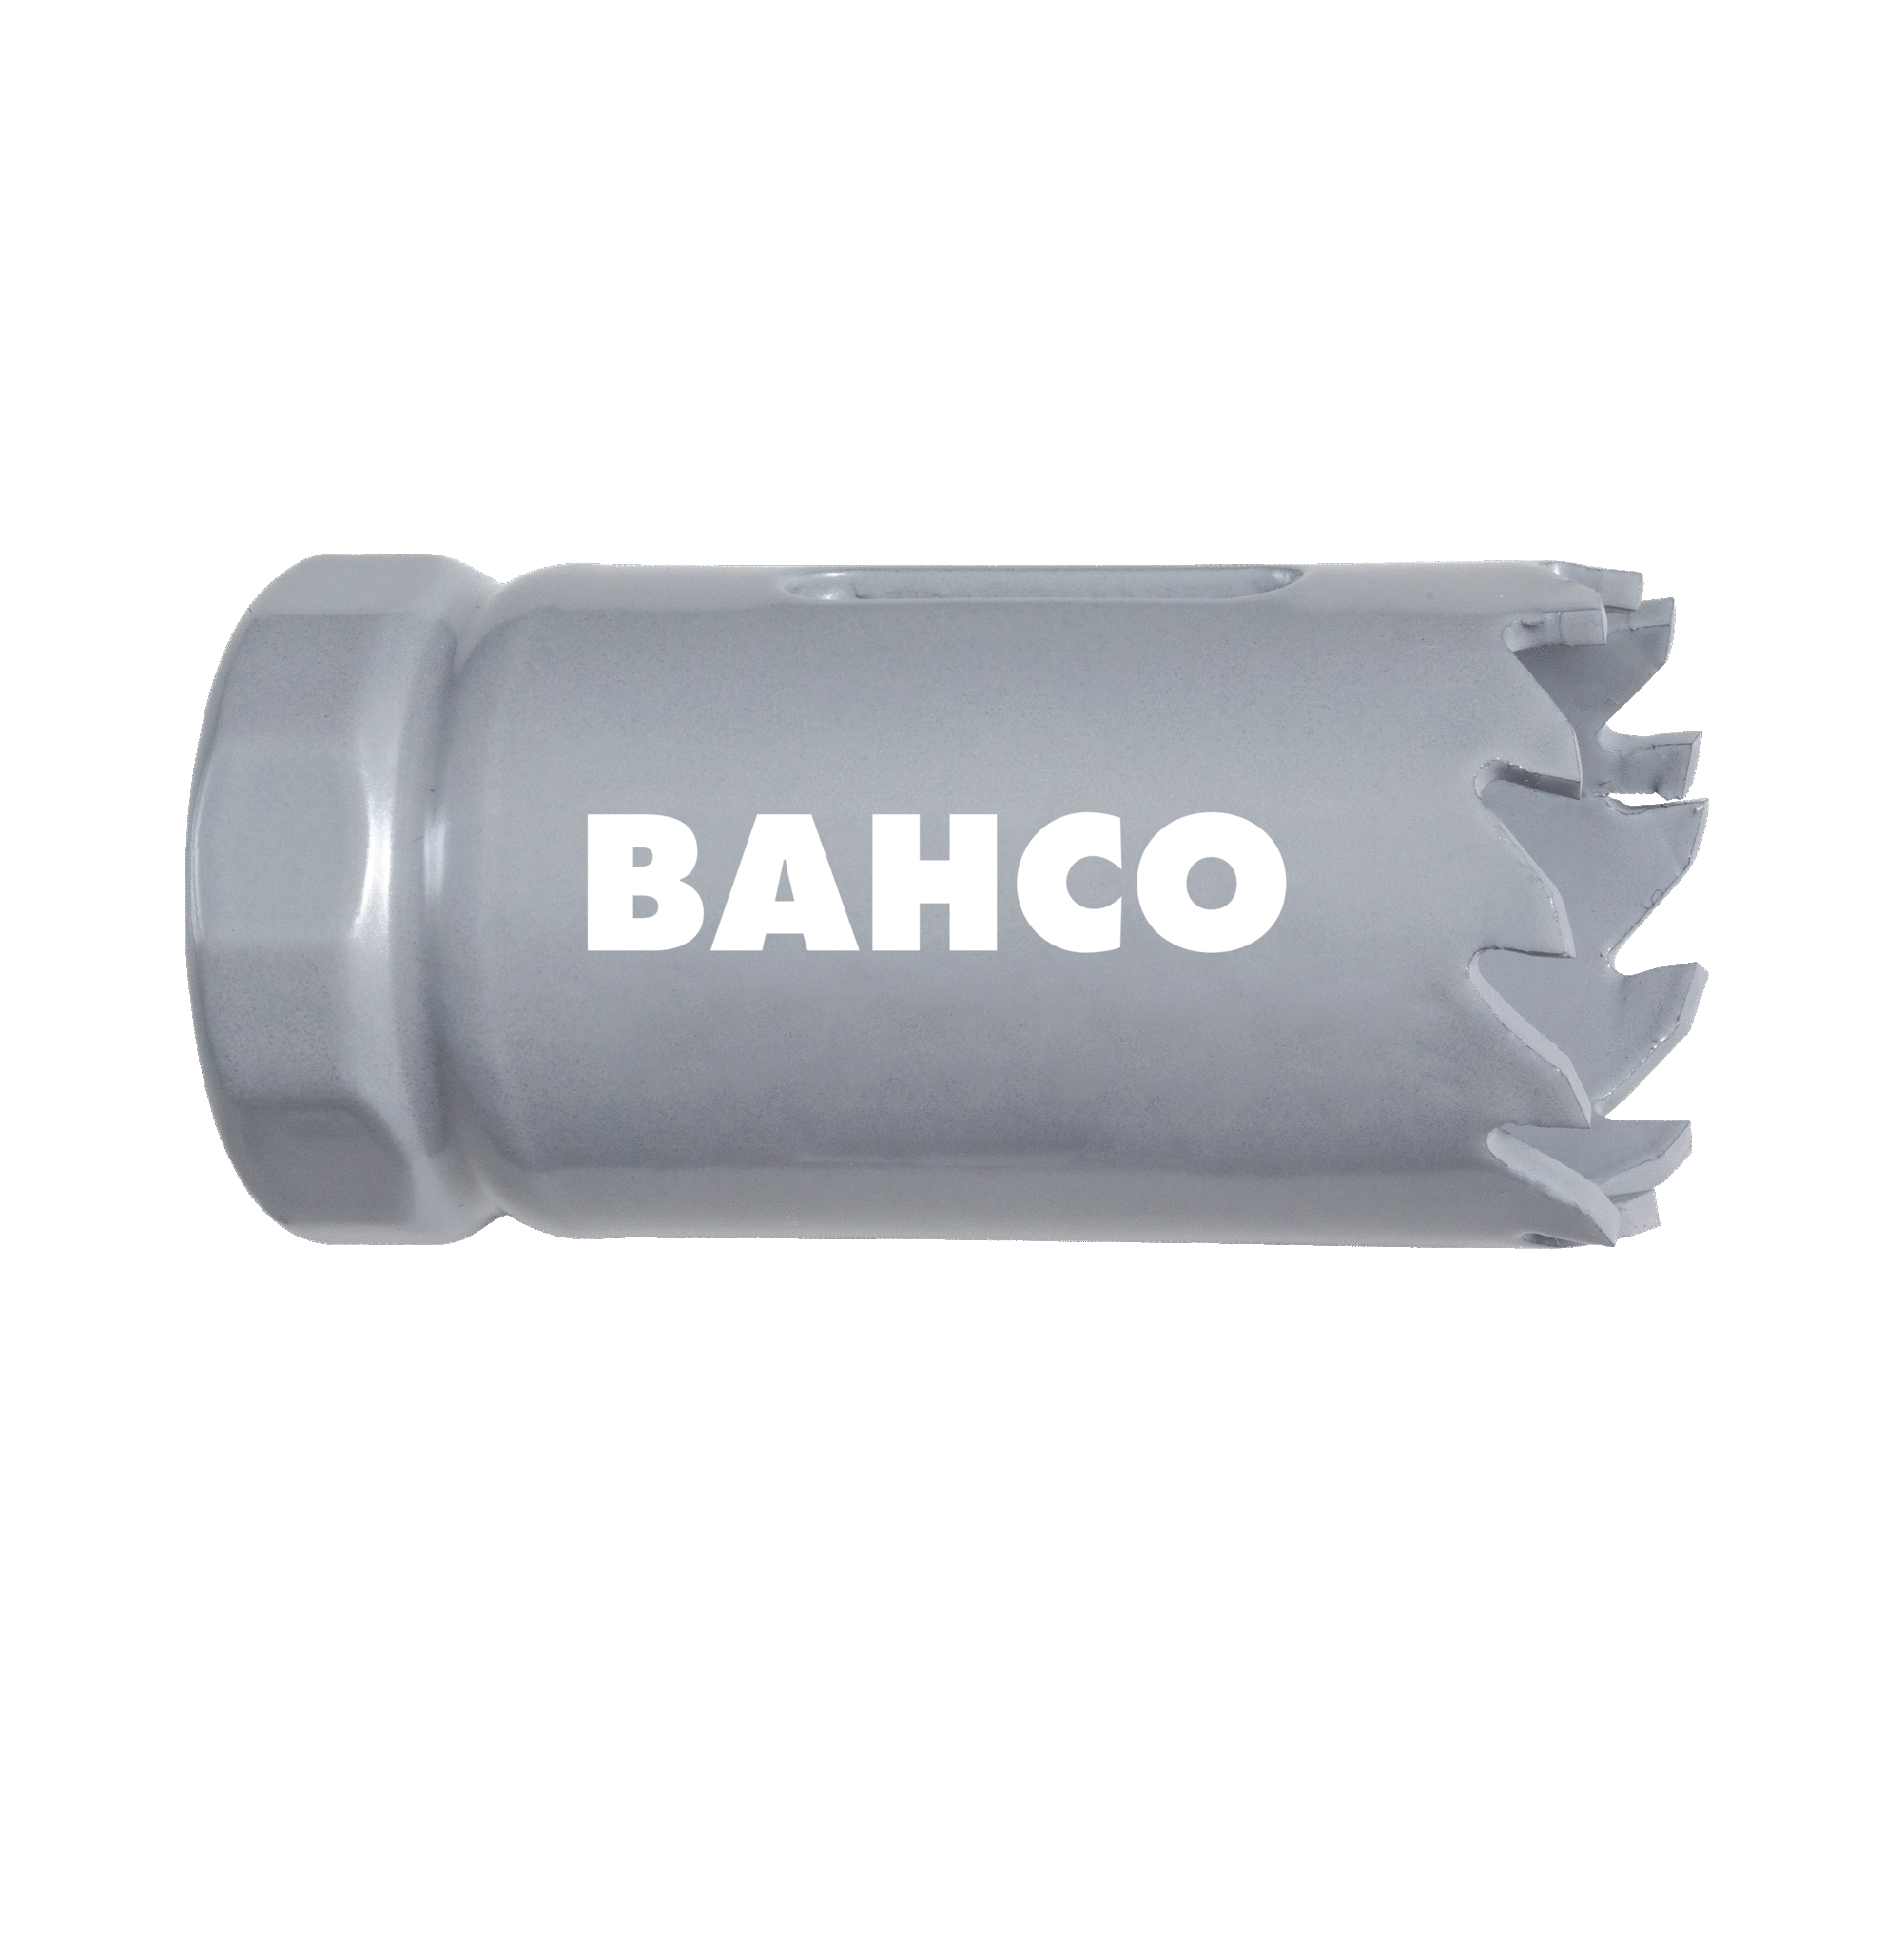 Кольцевые пилы с твердосплавными напайками BAHCO 3832-114